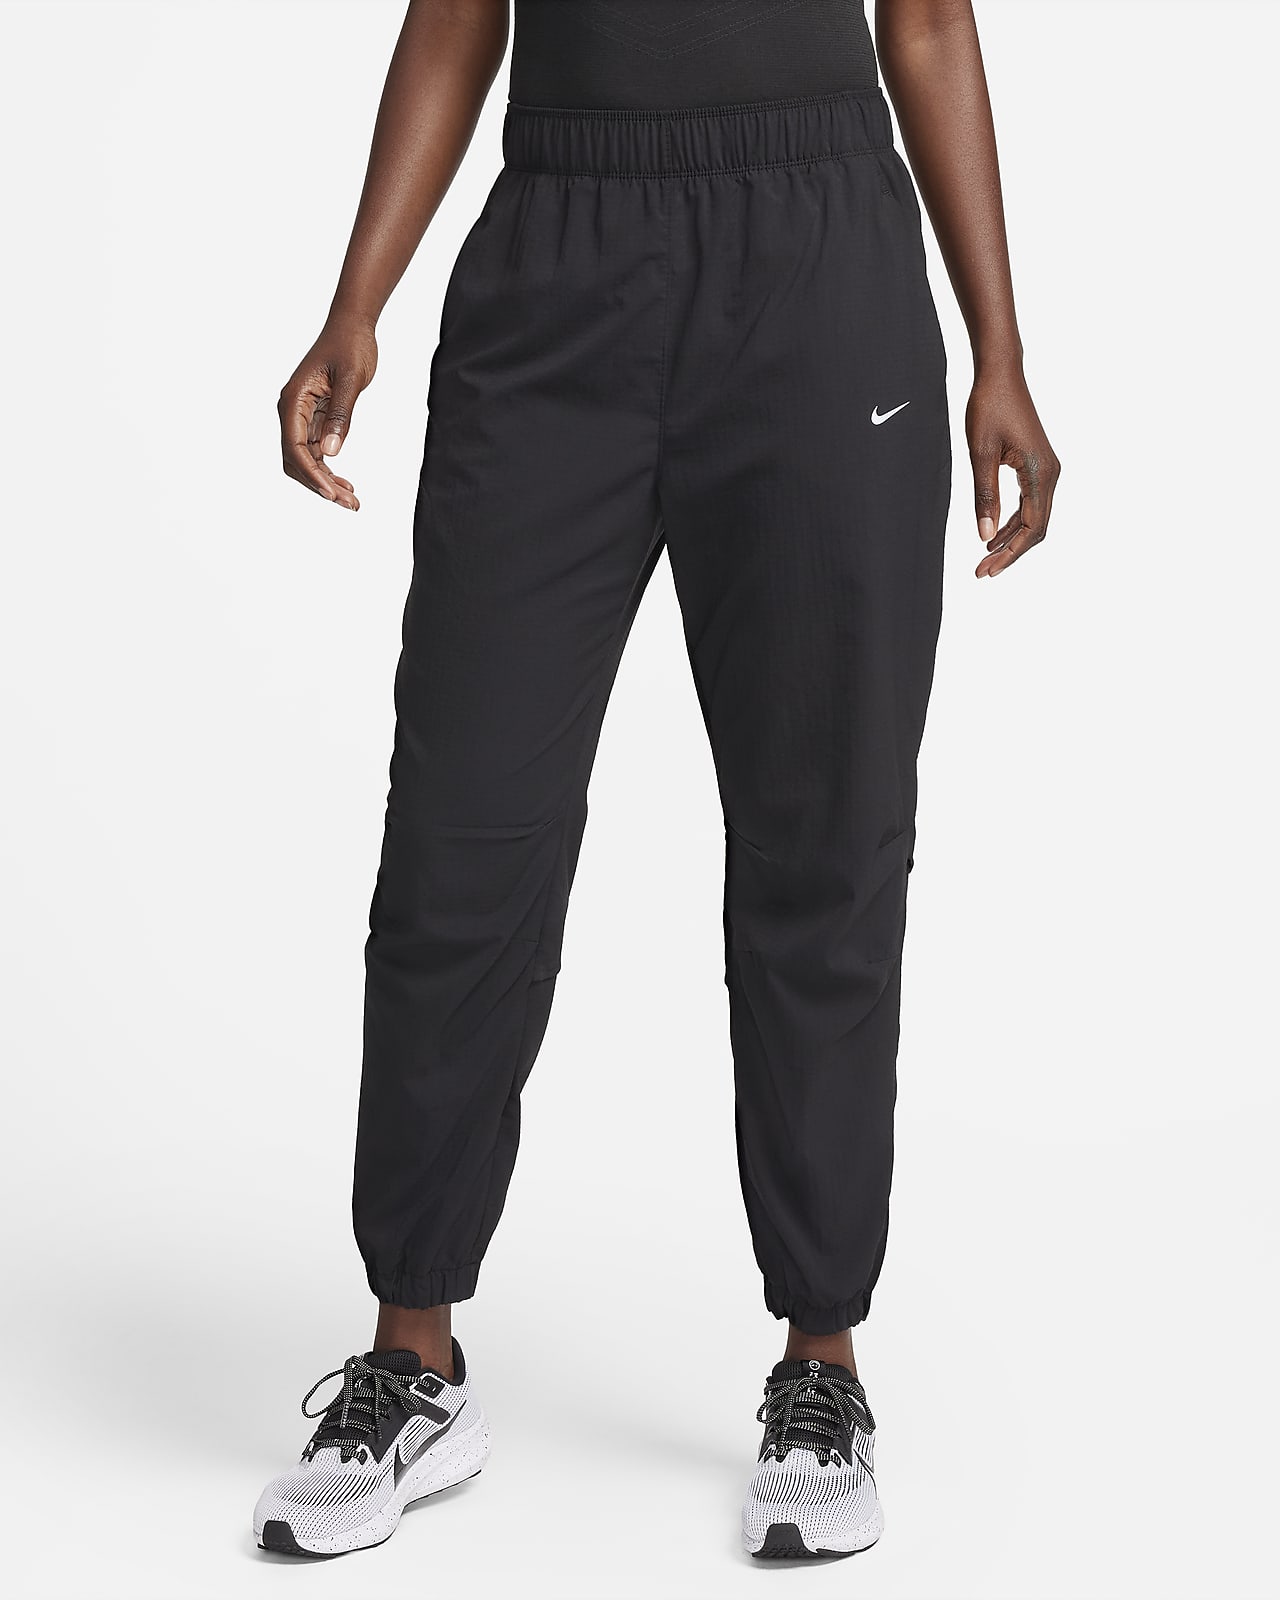 Dámské 7/8 běžecké kalhoty Nike Dri-FIT Fast se středně vysokým pasem na rozcvičkum